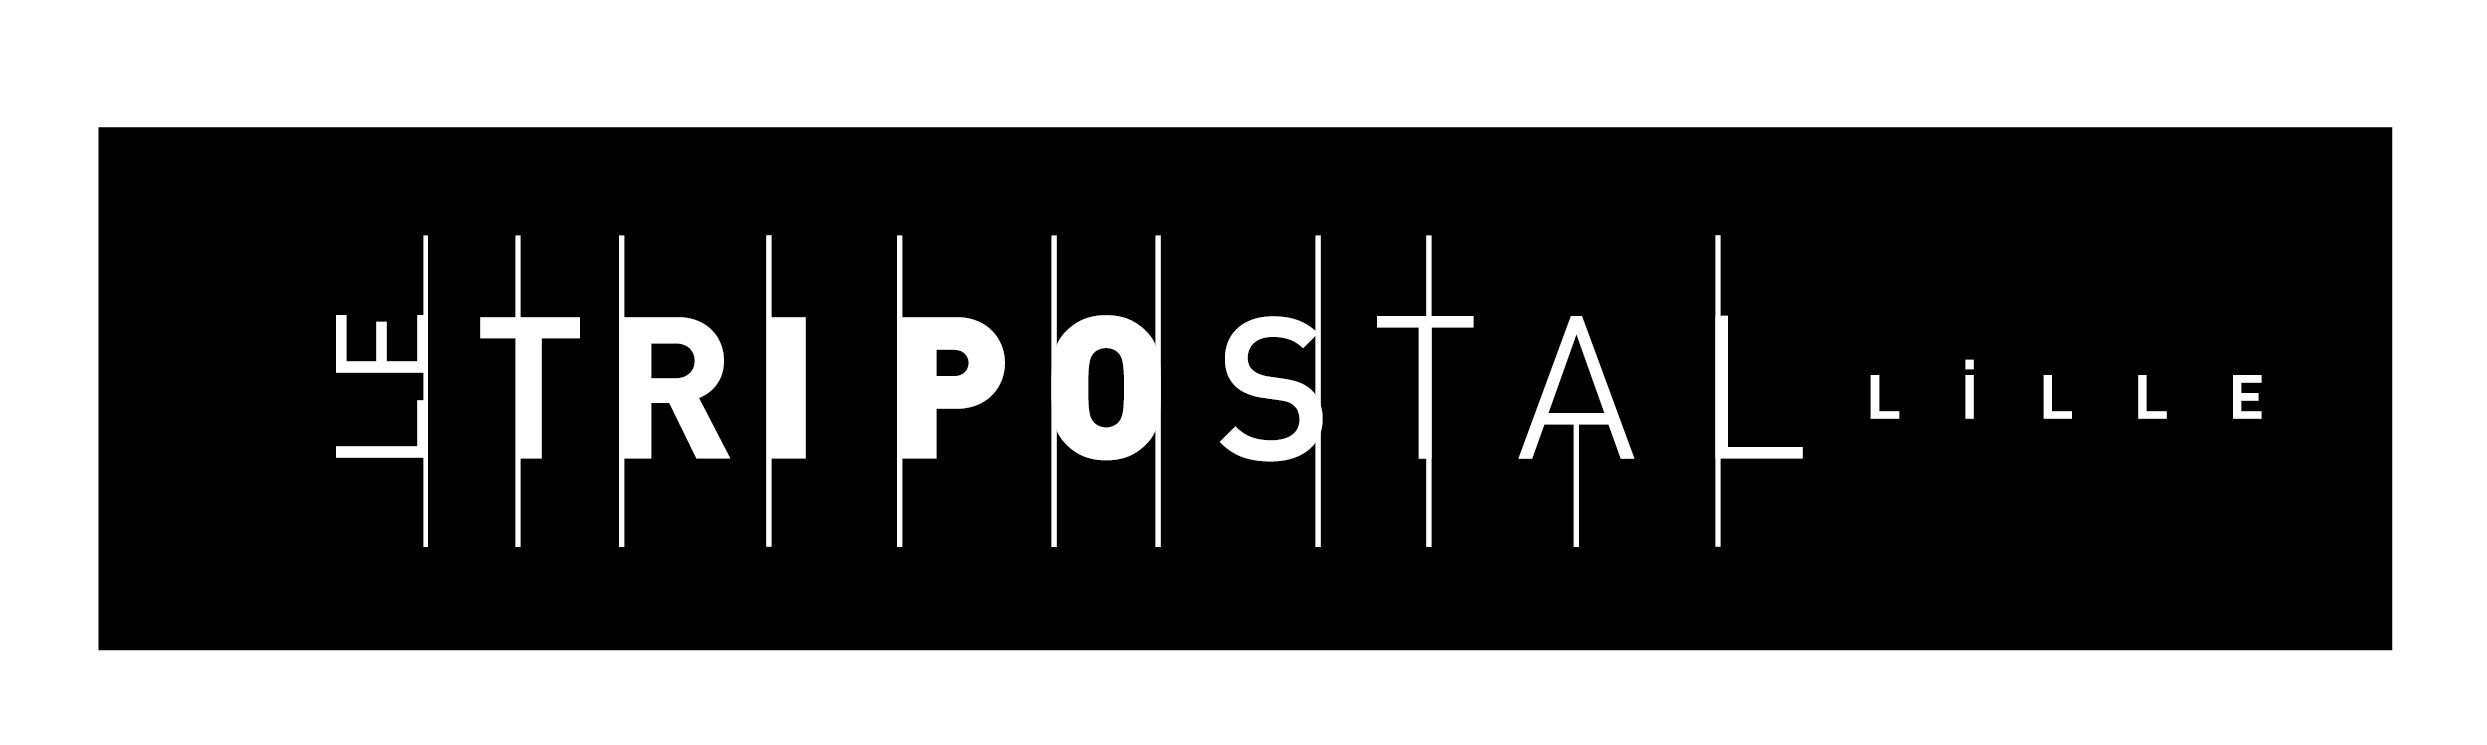 Identité visuelle du Tri Postal - Lille Graphisme Denis Toulet